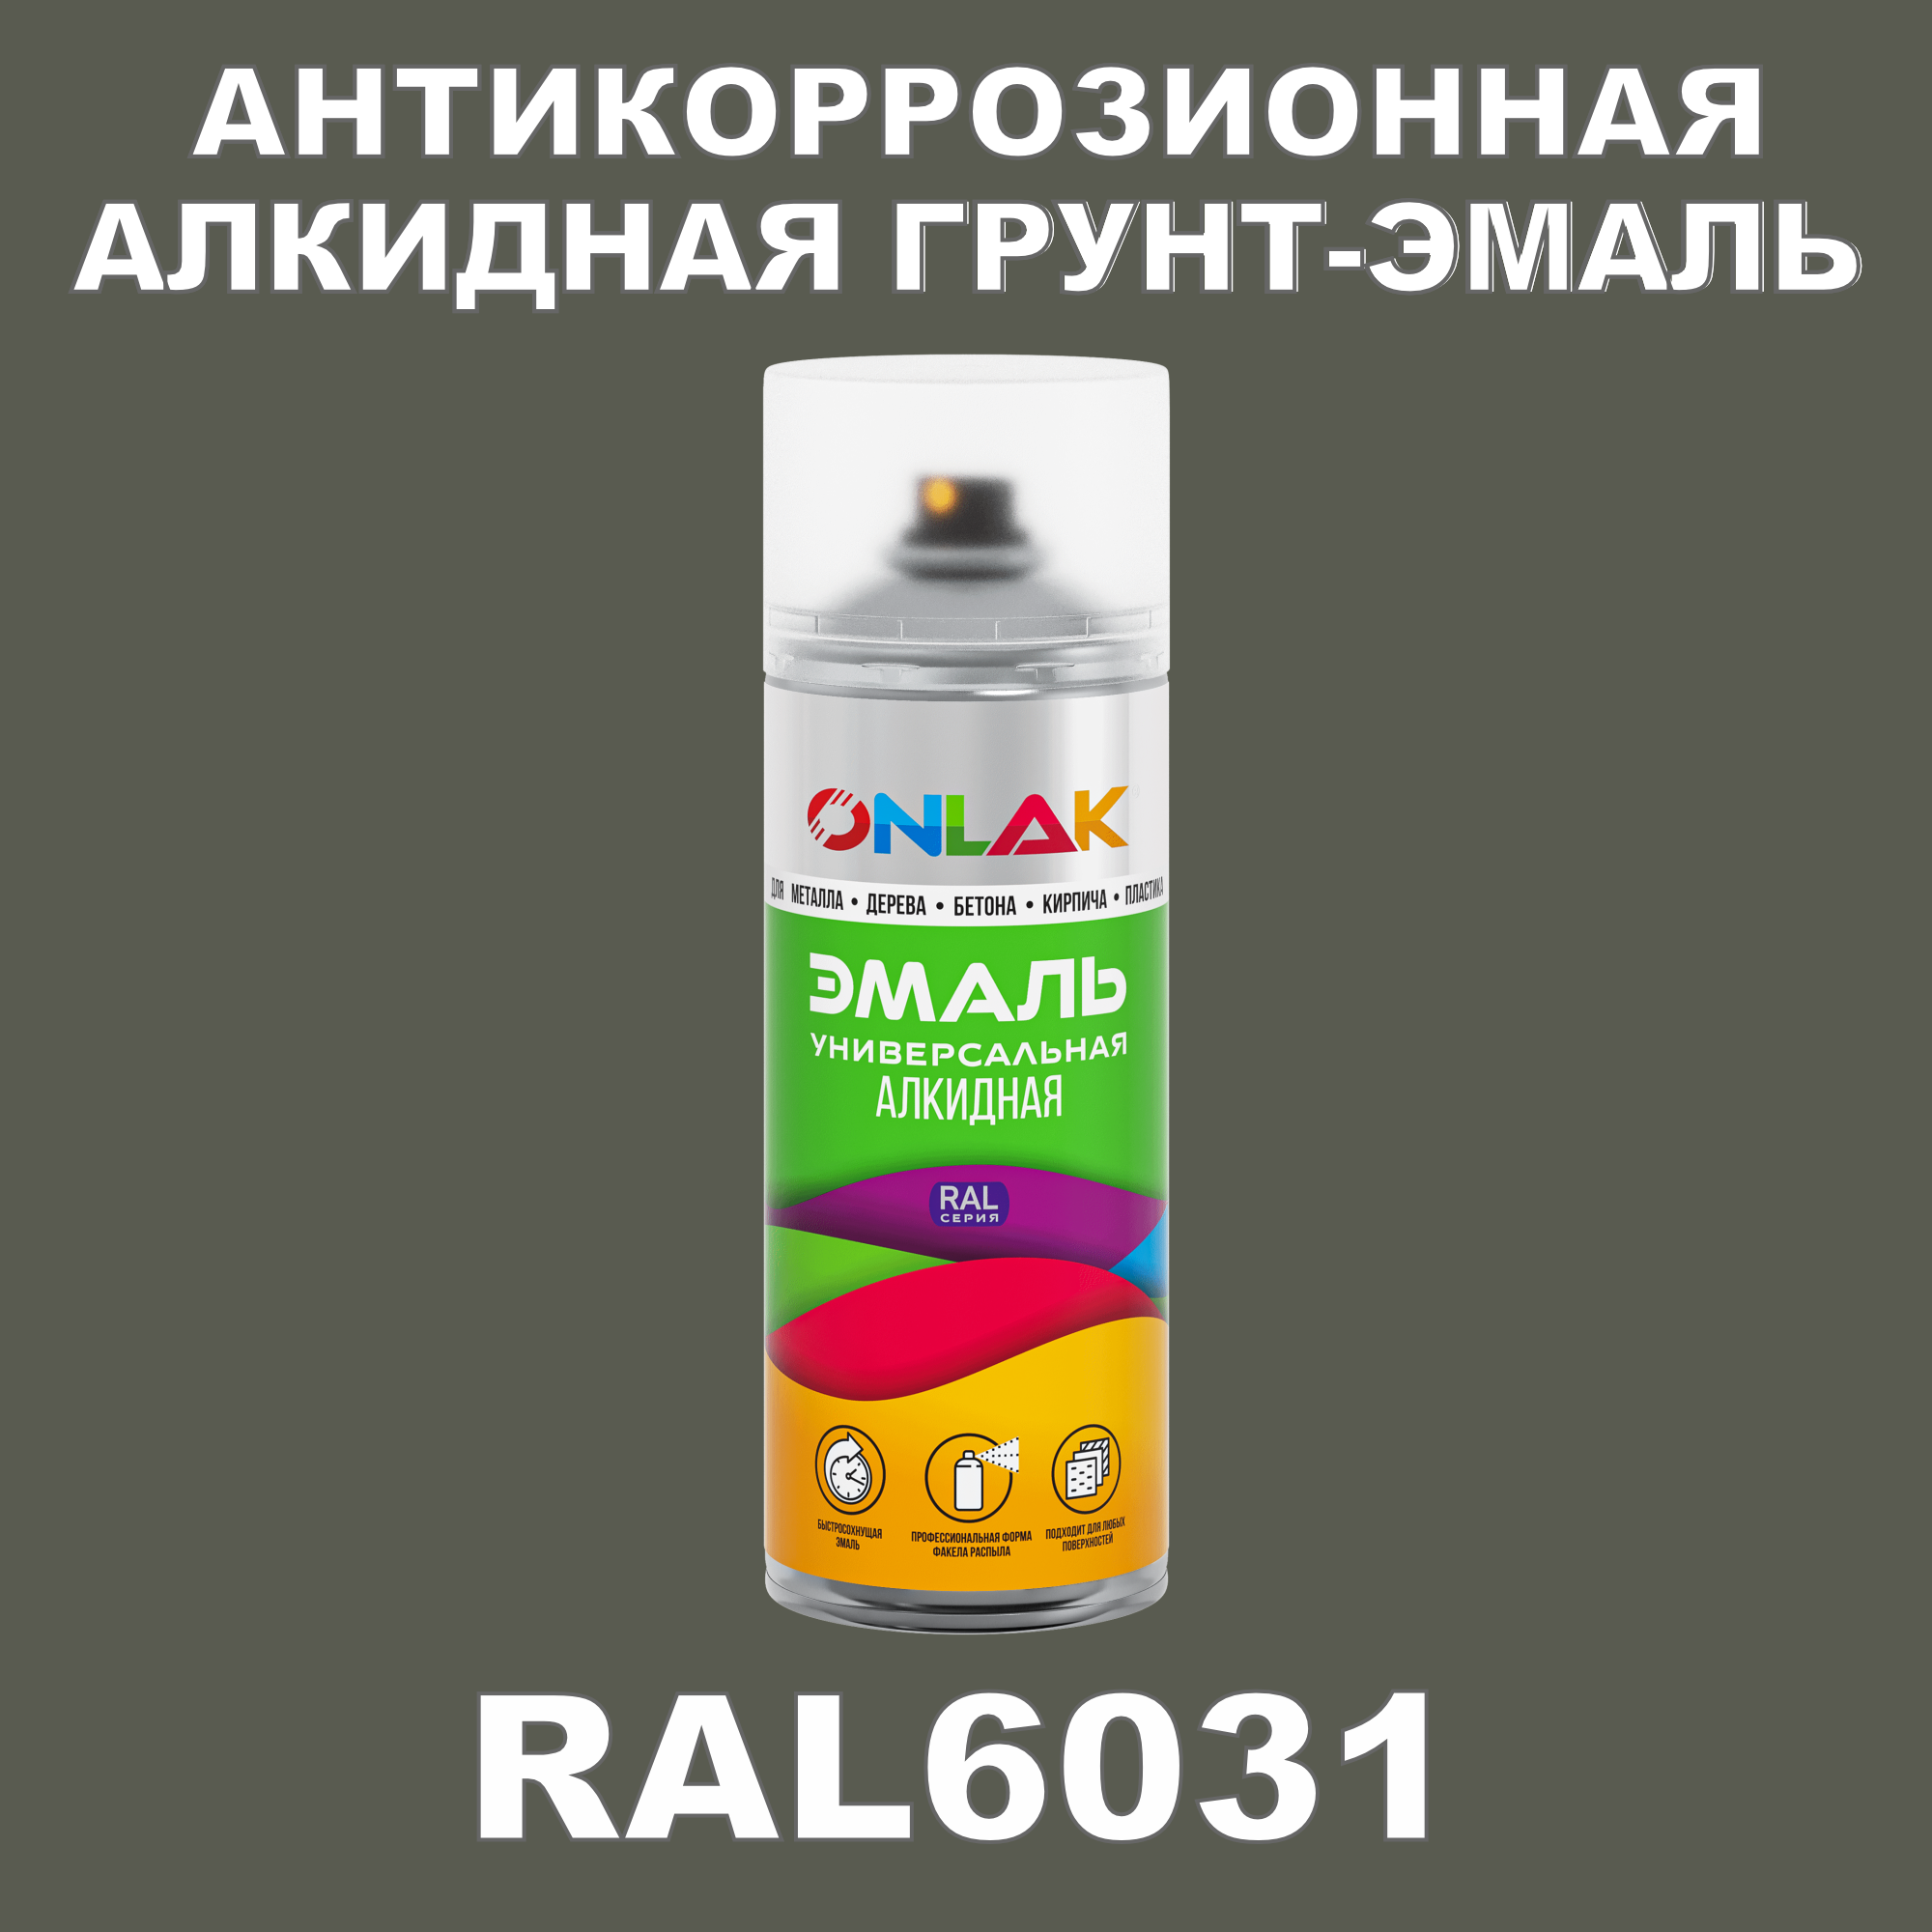 Антикоррозионная грунт-эмаль ONLAK RAL 6031,зеленый,647 мл